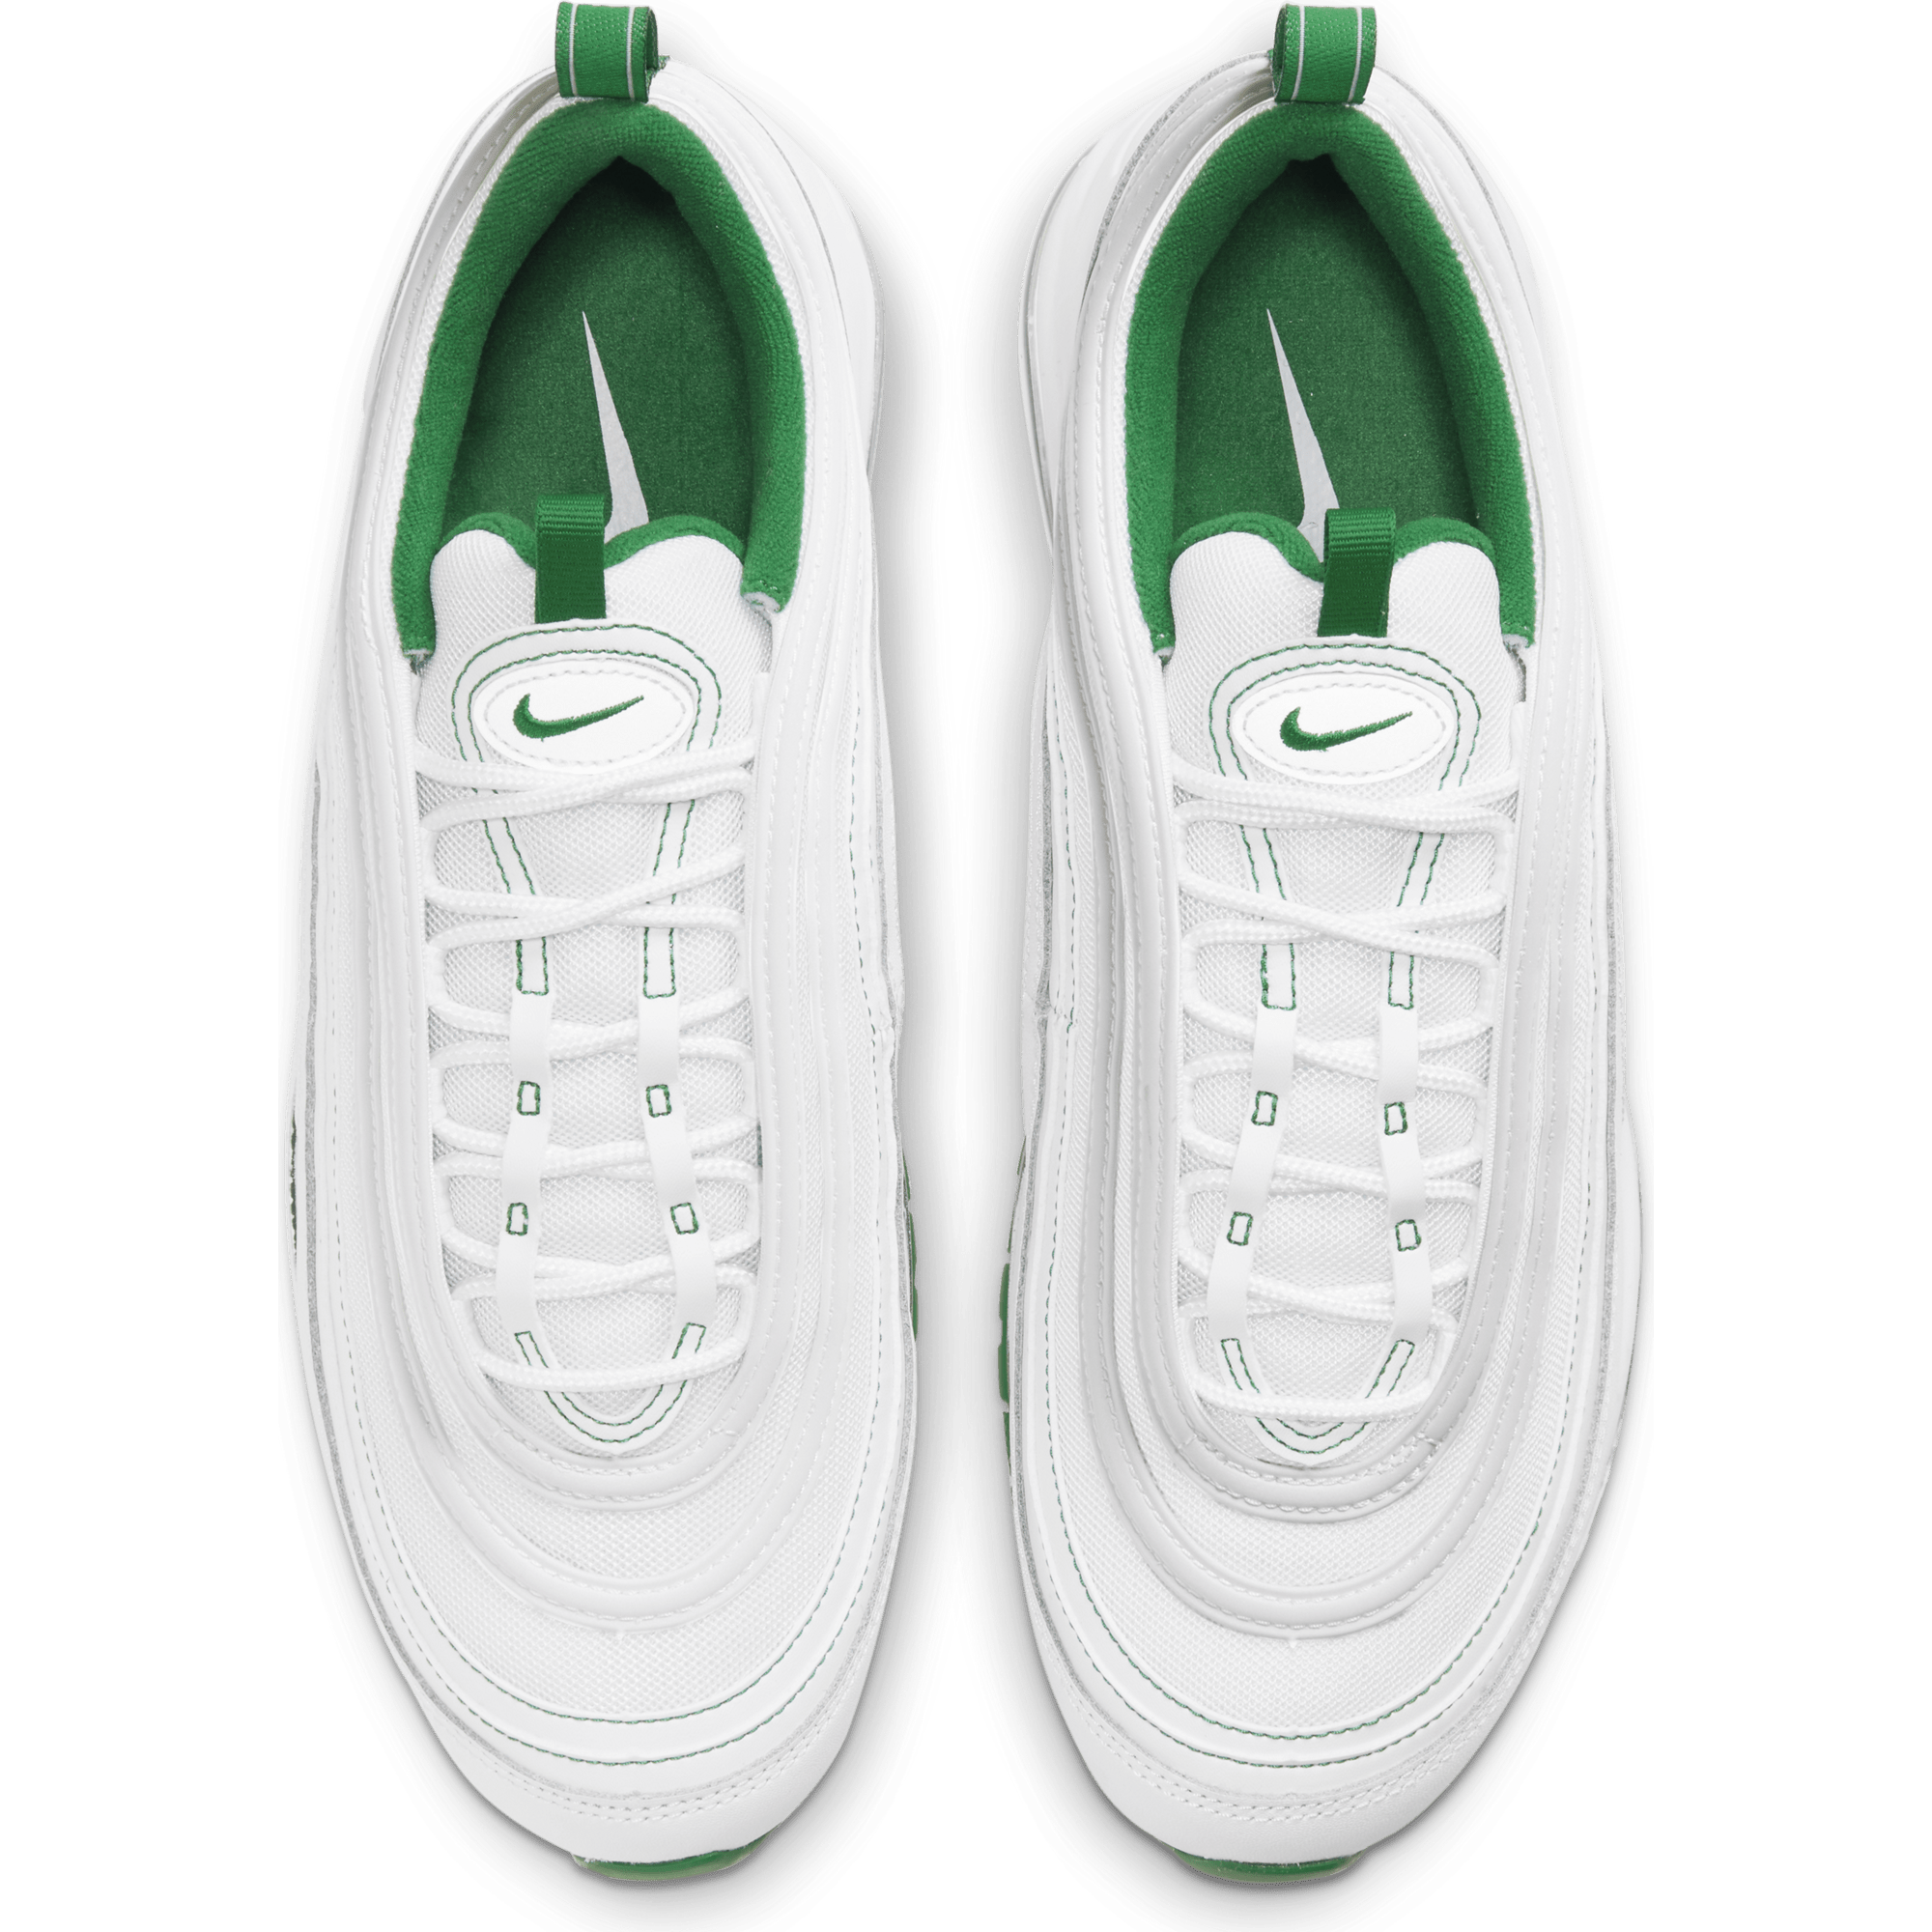 Nike FOOTWEAR Nike Air Max 97 - Men's